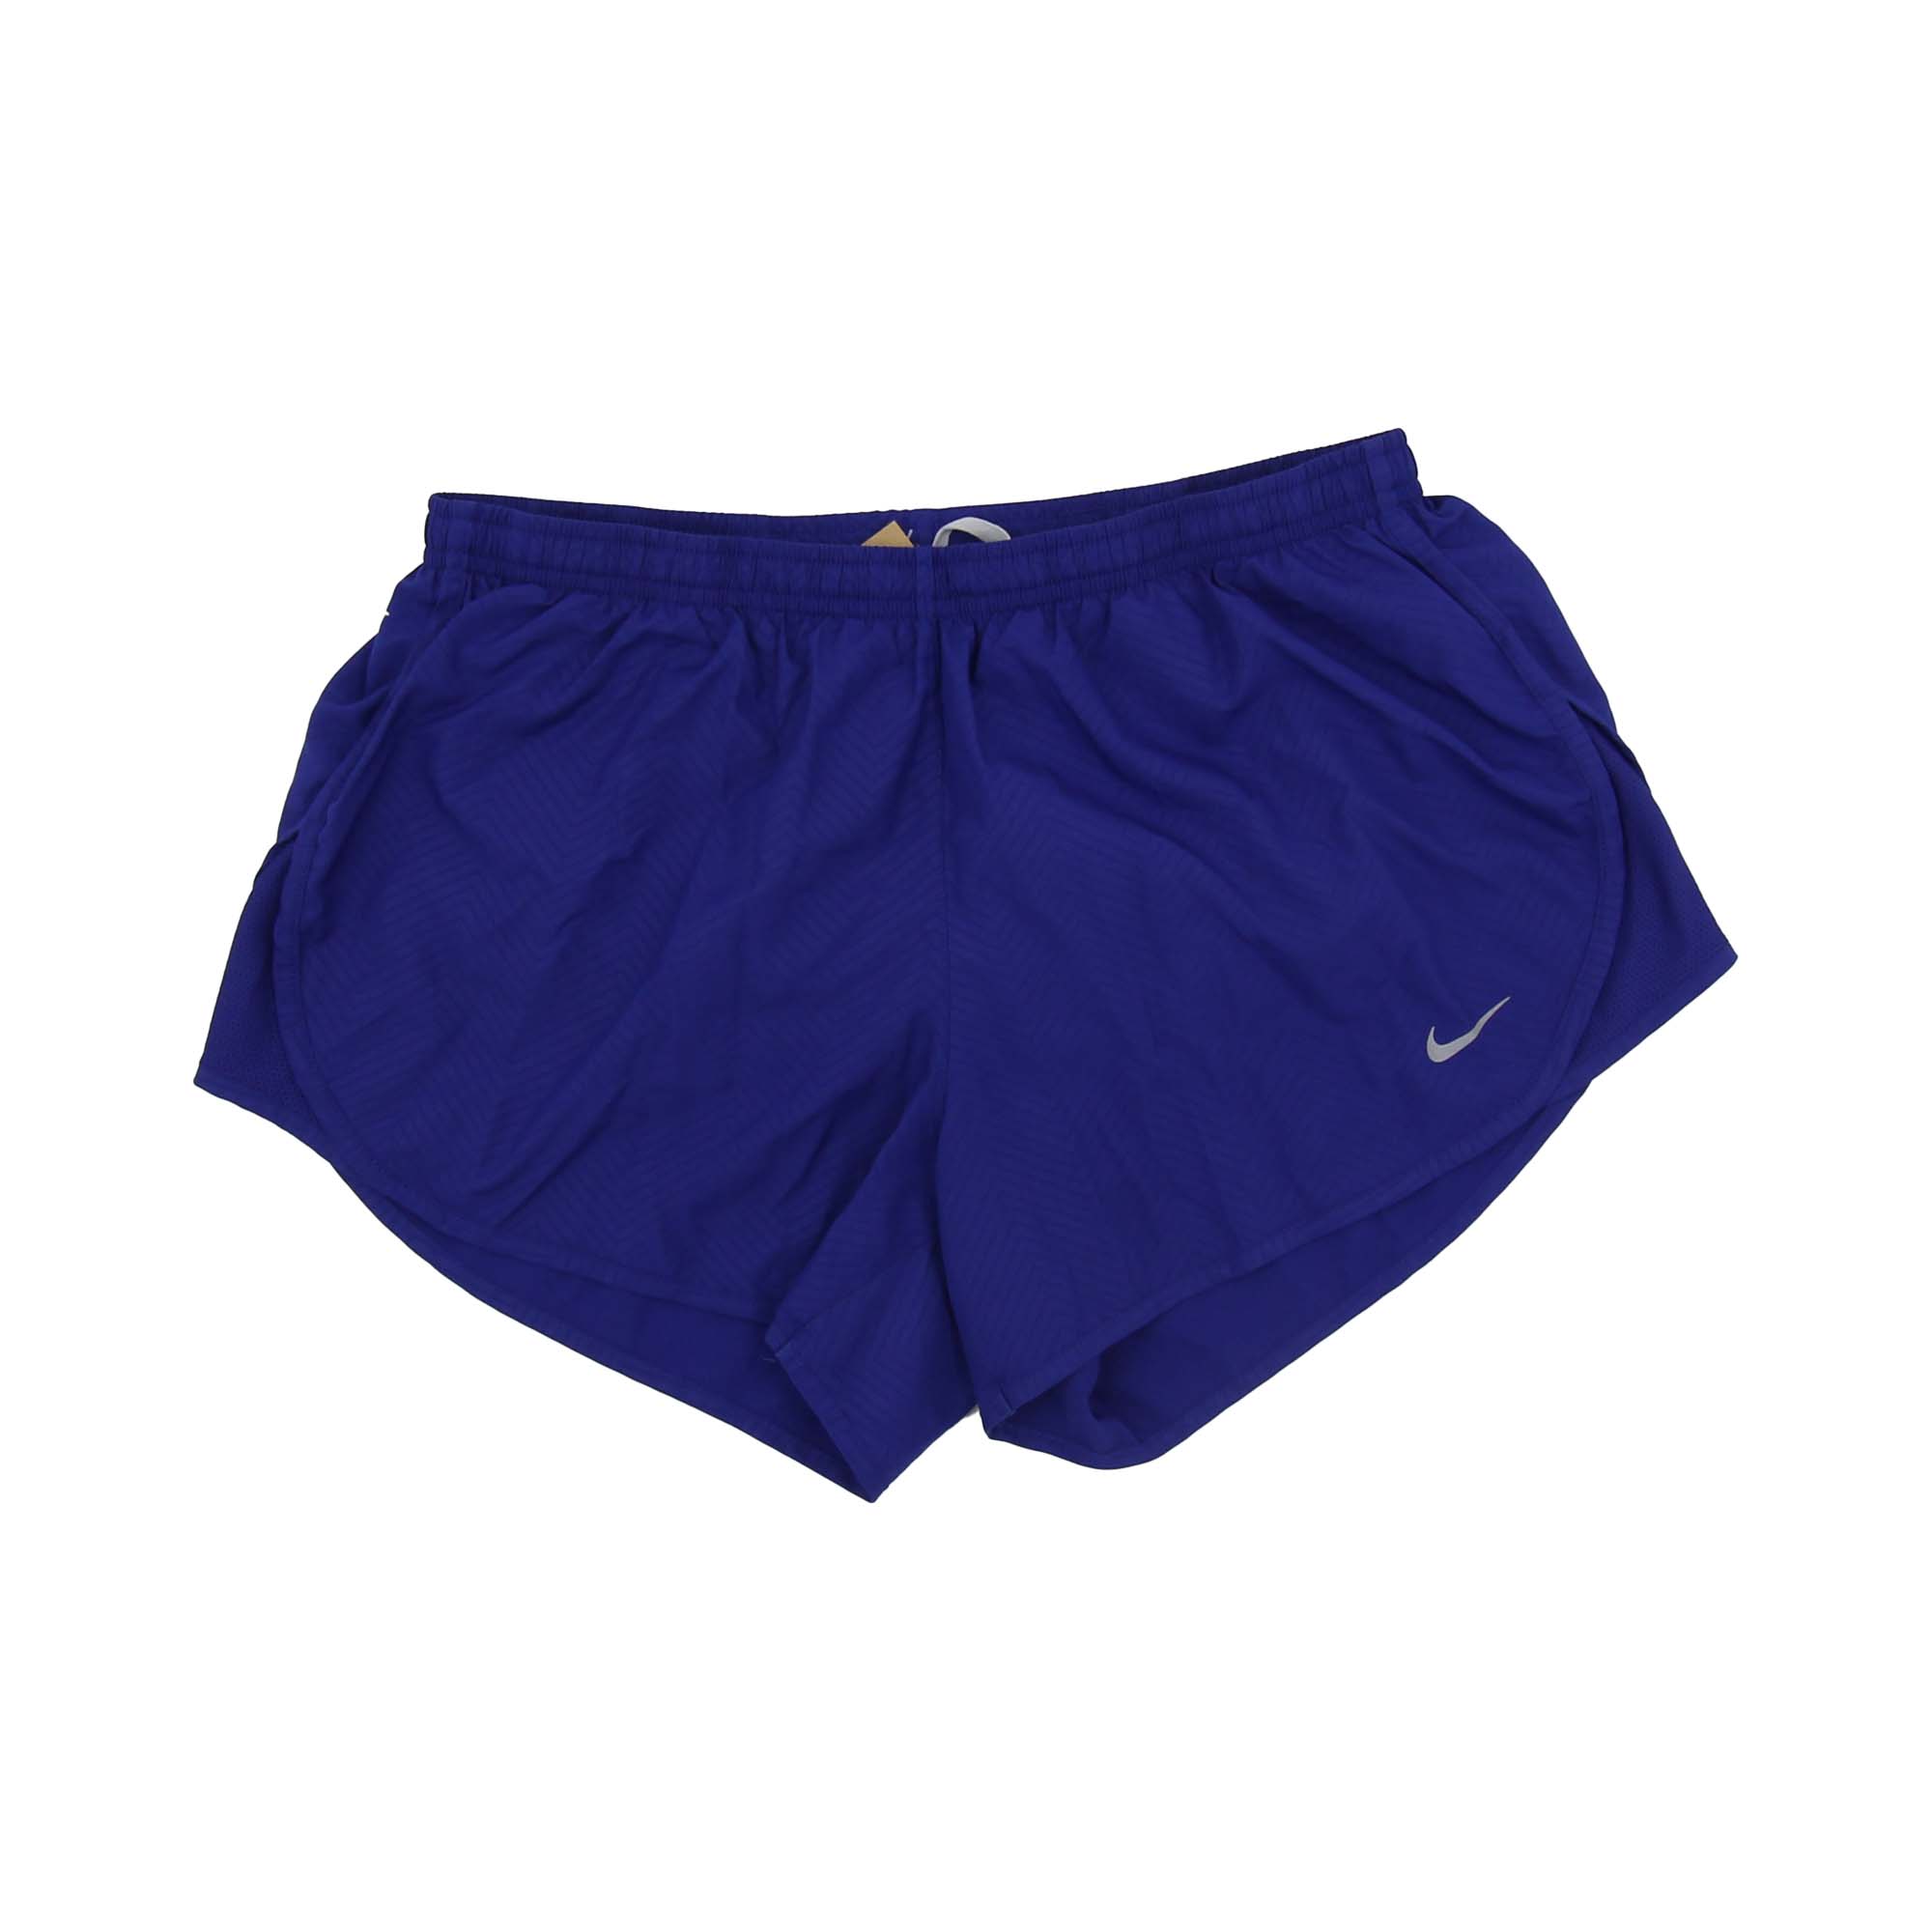 Nike Shorts - Women's M